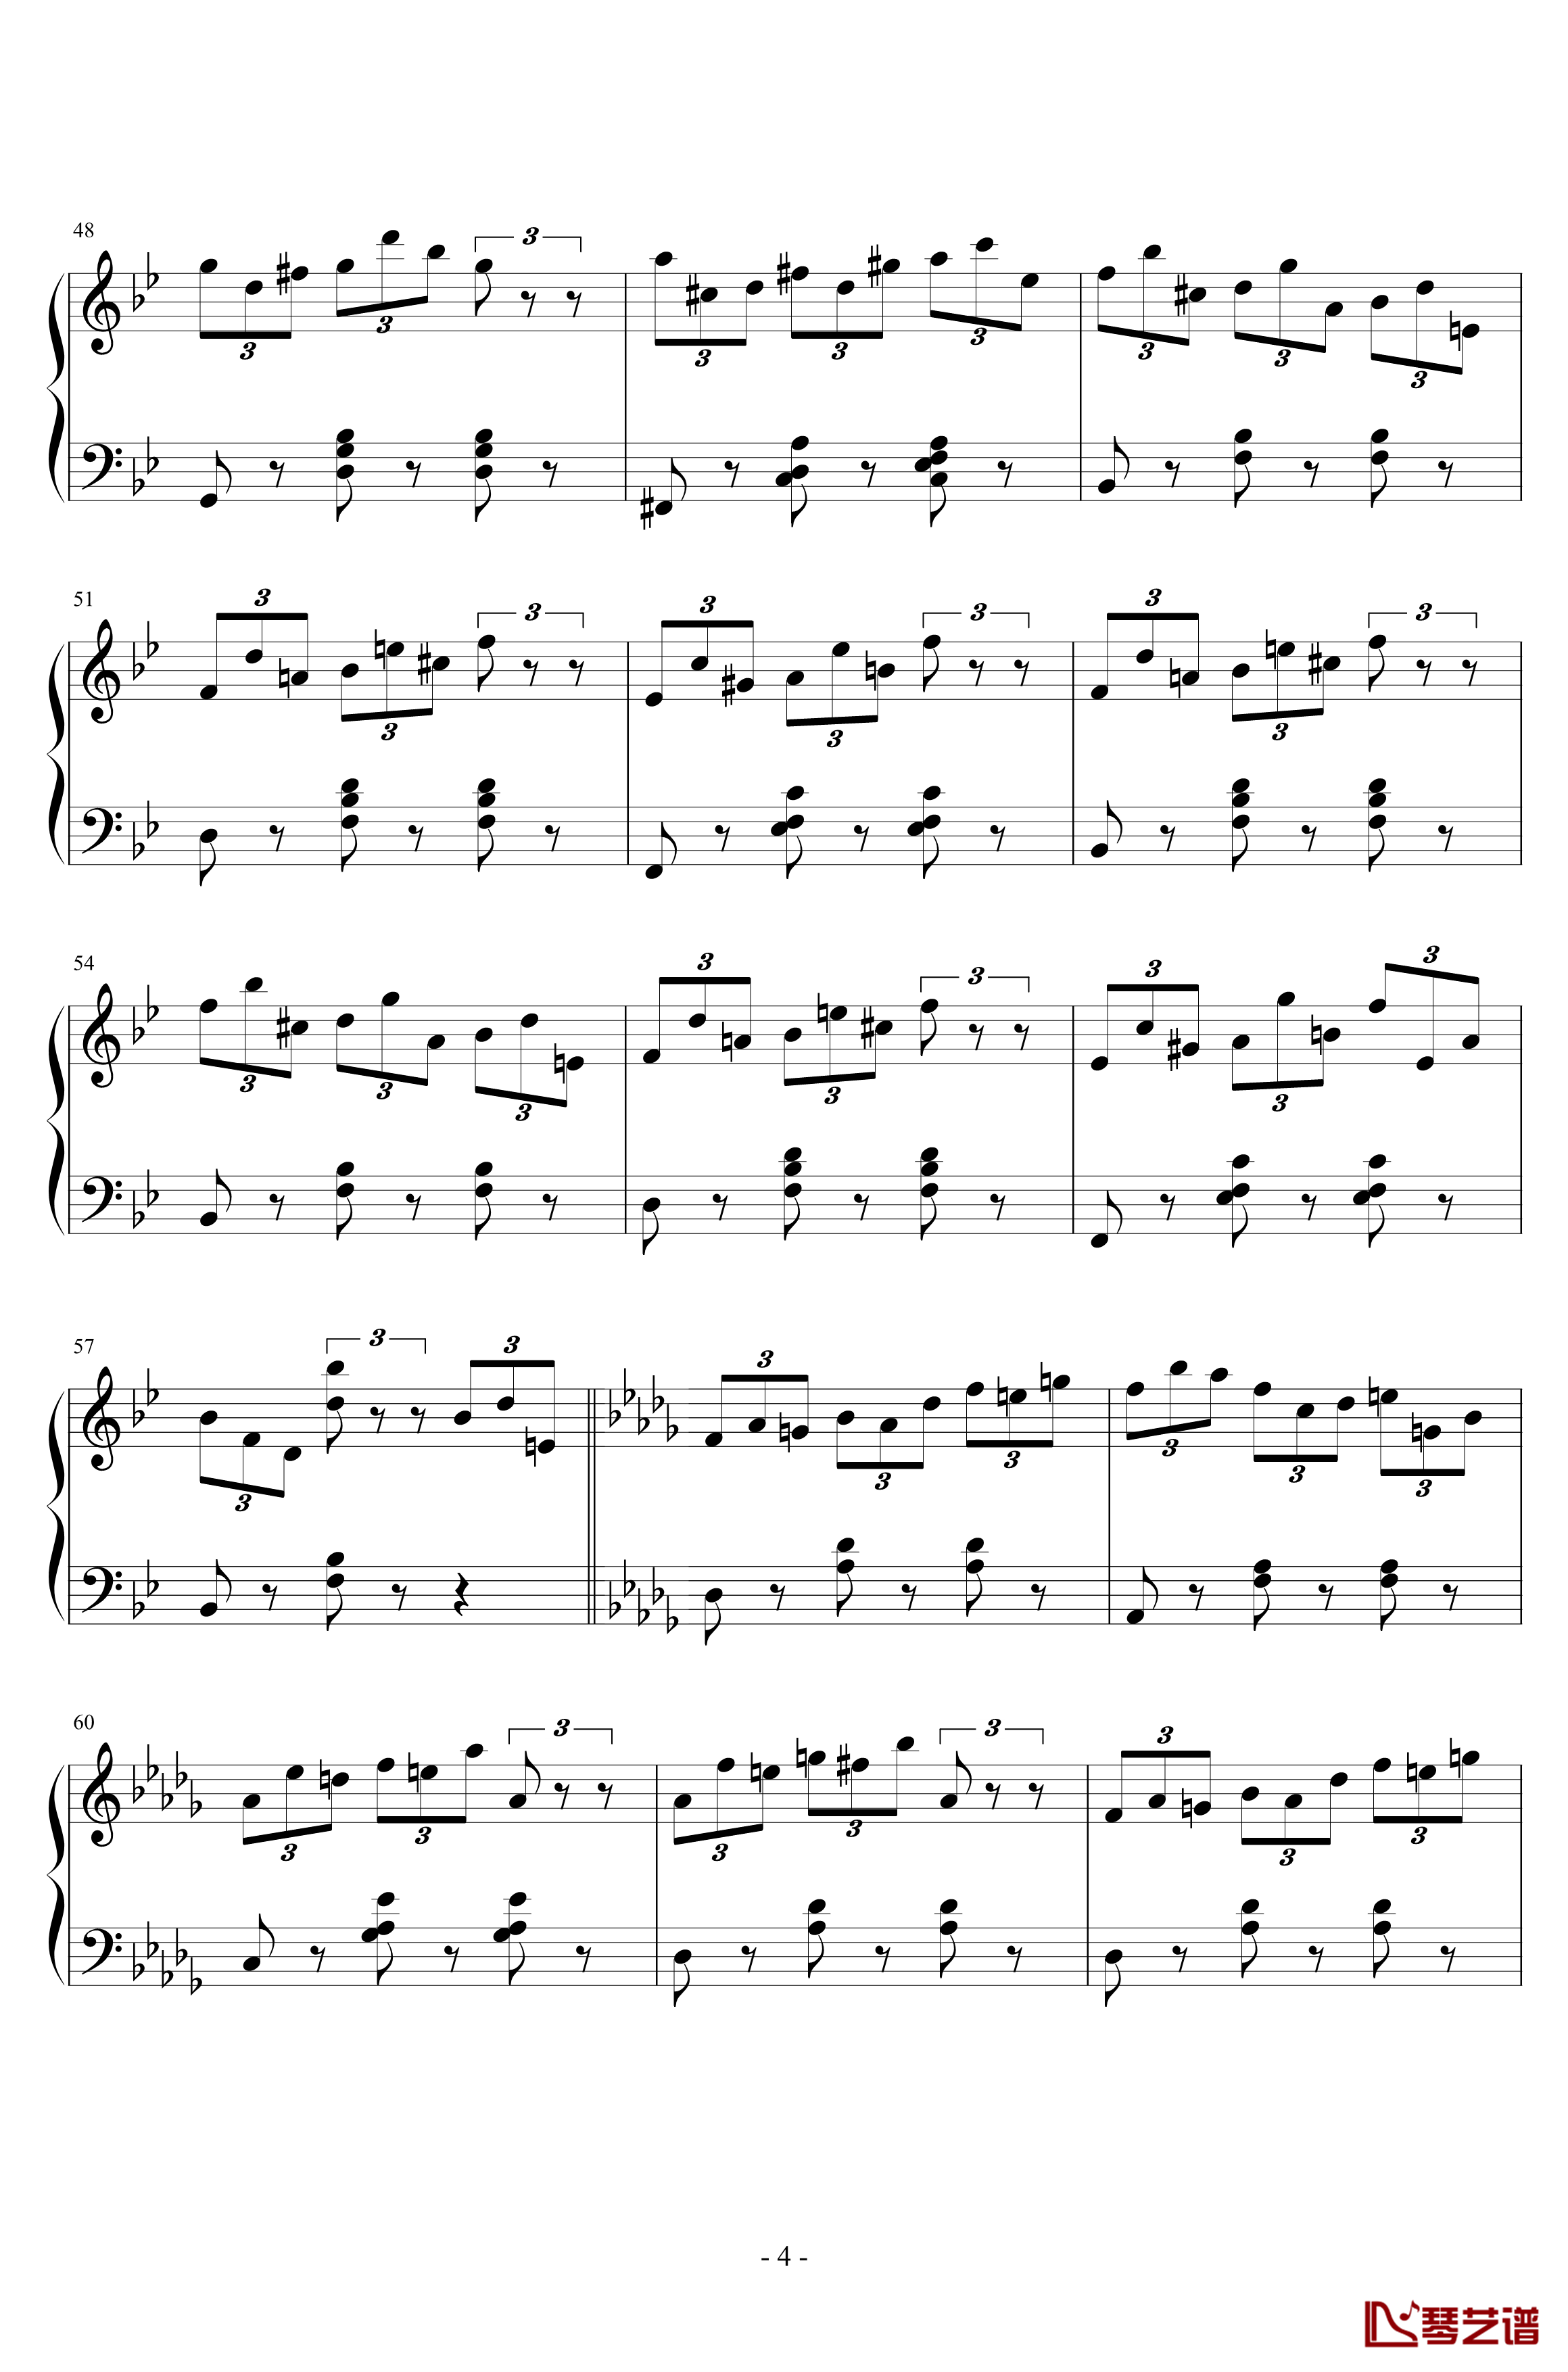 练习曲No.1 Op.6 降D大调练习曲钢琴谱-江畔新绿4